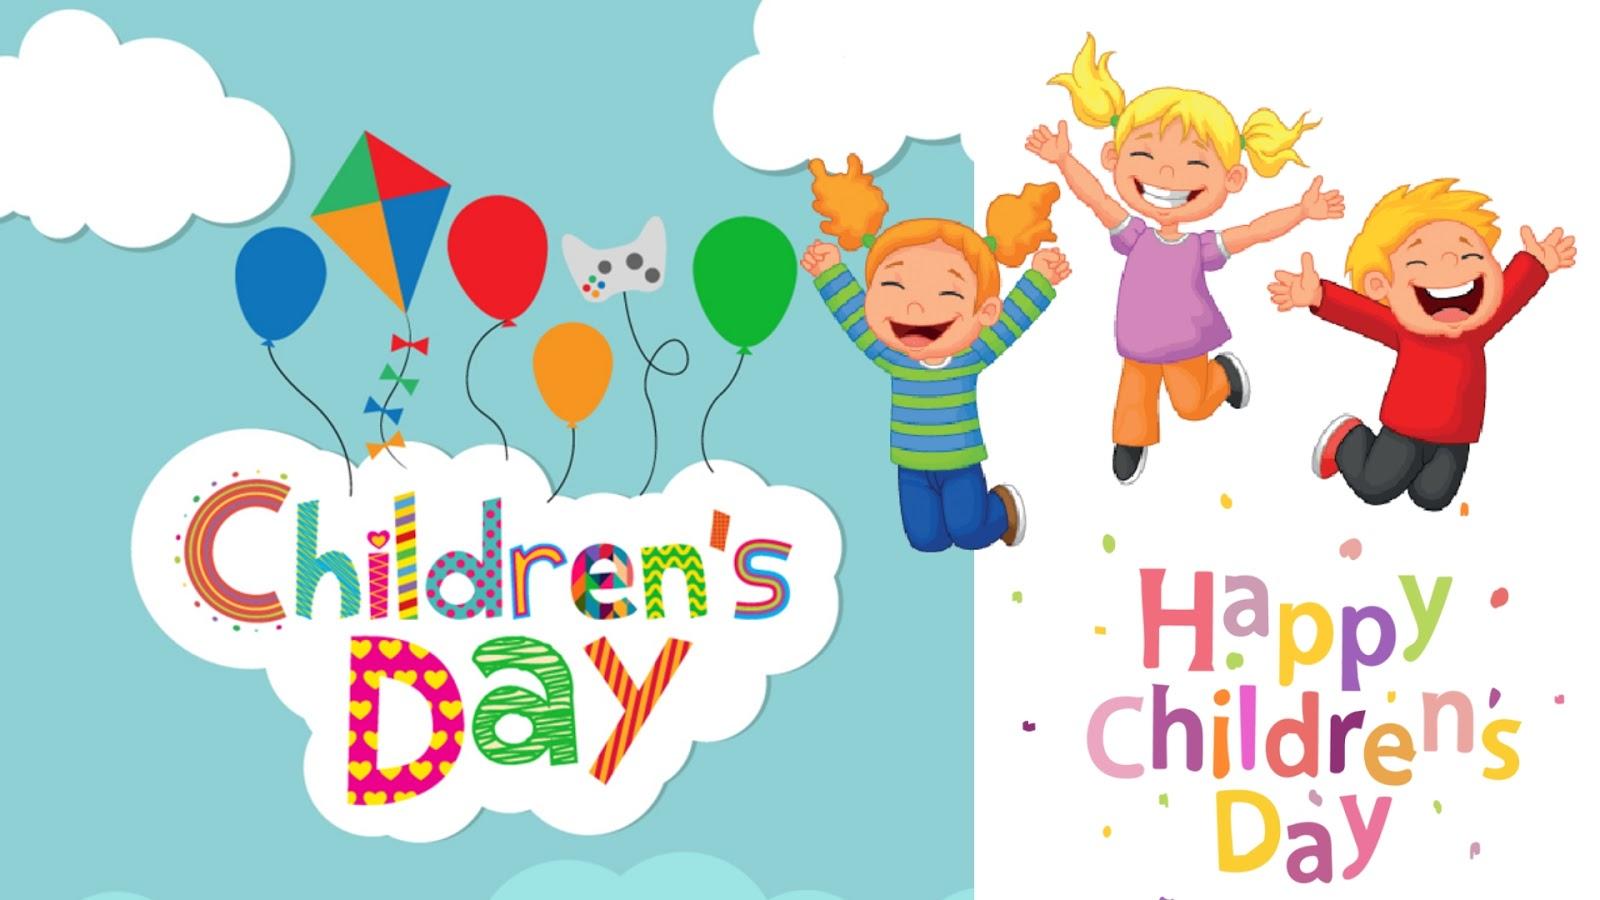 Happy Children Day Wishes Image, Happy Children's